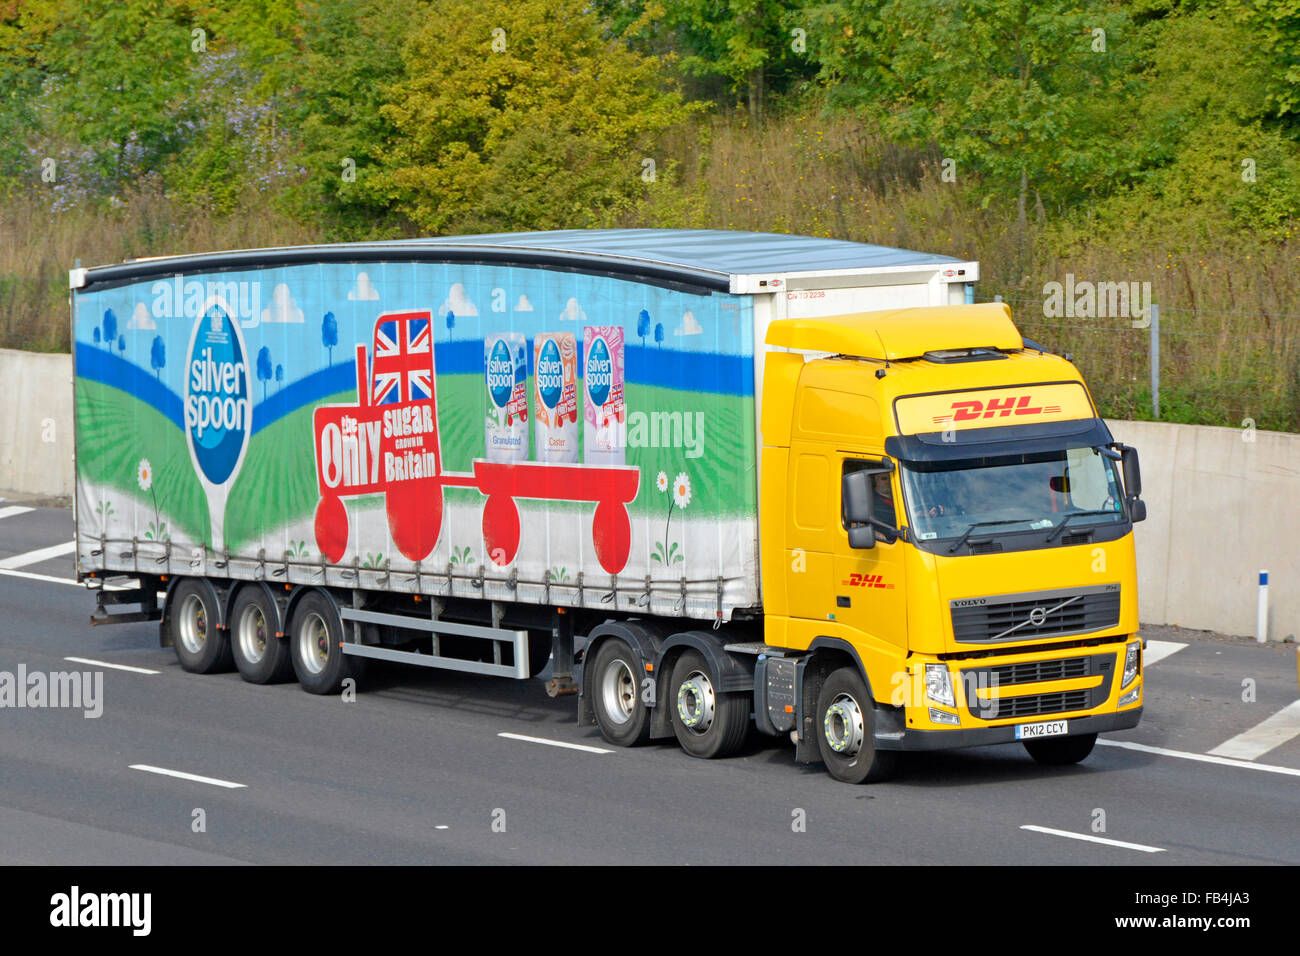 DHL Volvo Lkw Lkw & Soft sided artikuliert Vorhang Anhänger Werbung Associated British Foods 'Silver Spoon' Zucker Marke fahren Auf de Autobahn Stockfoto